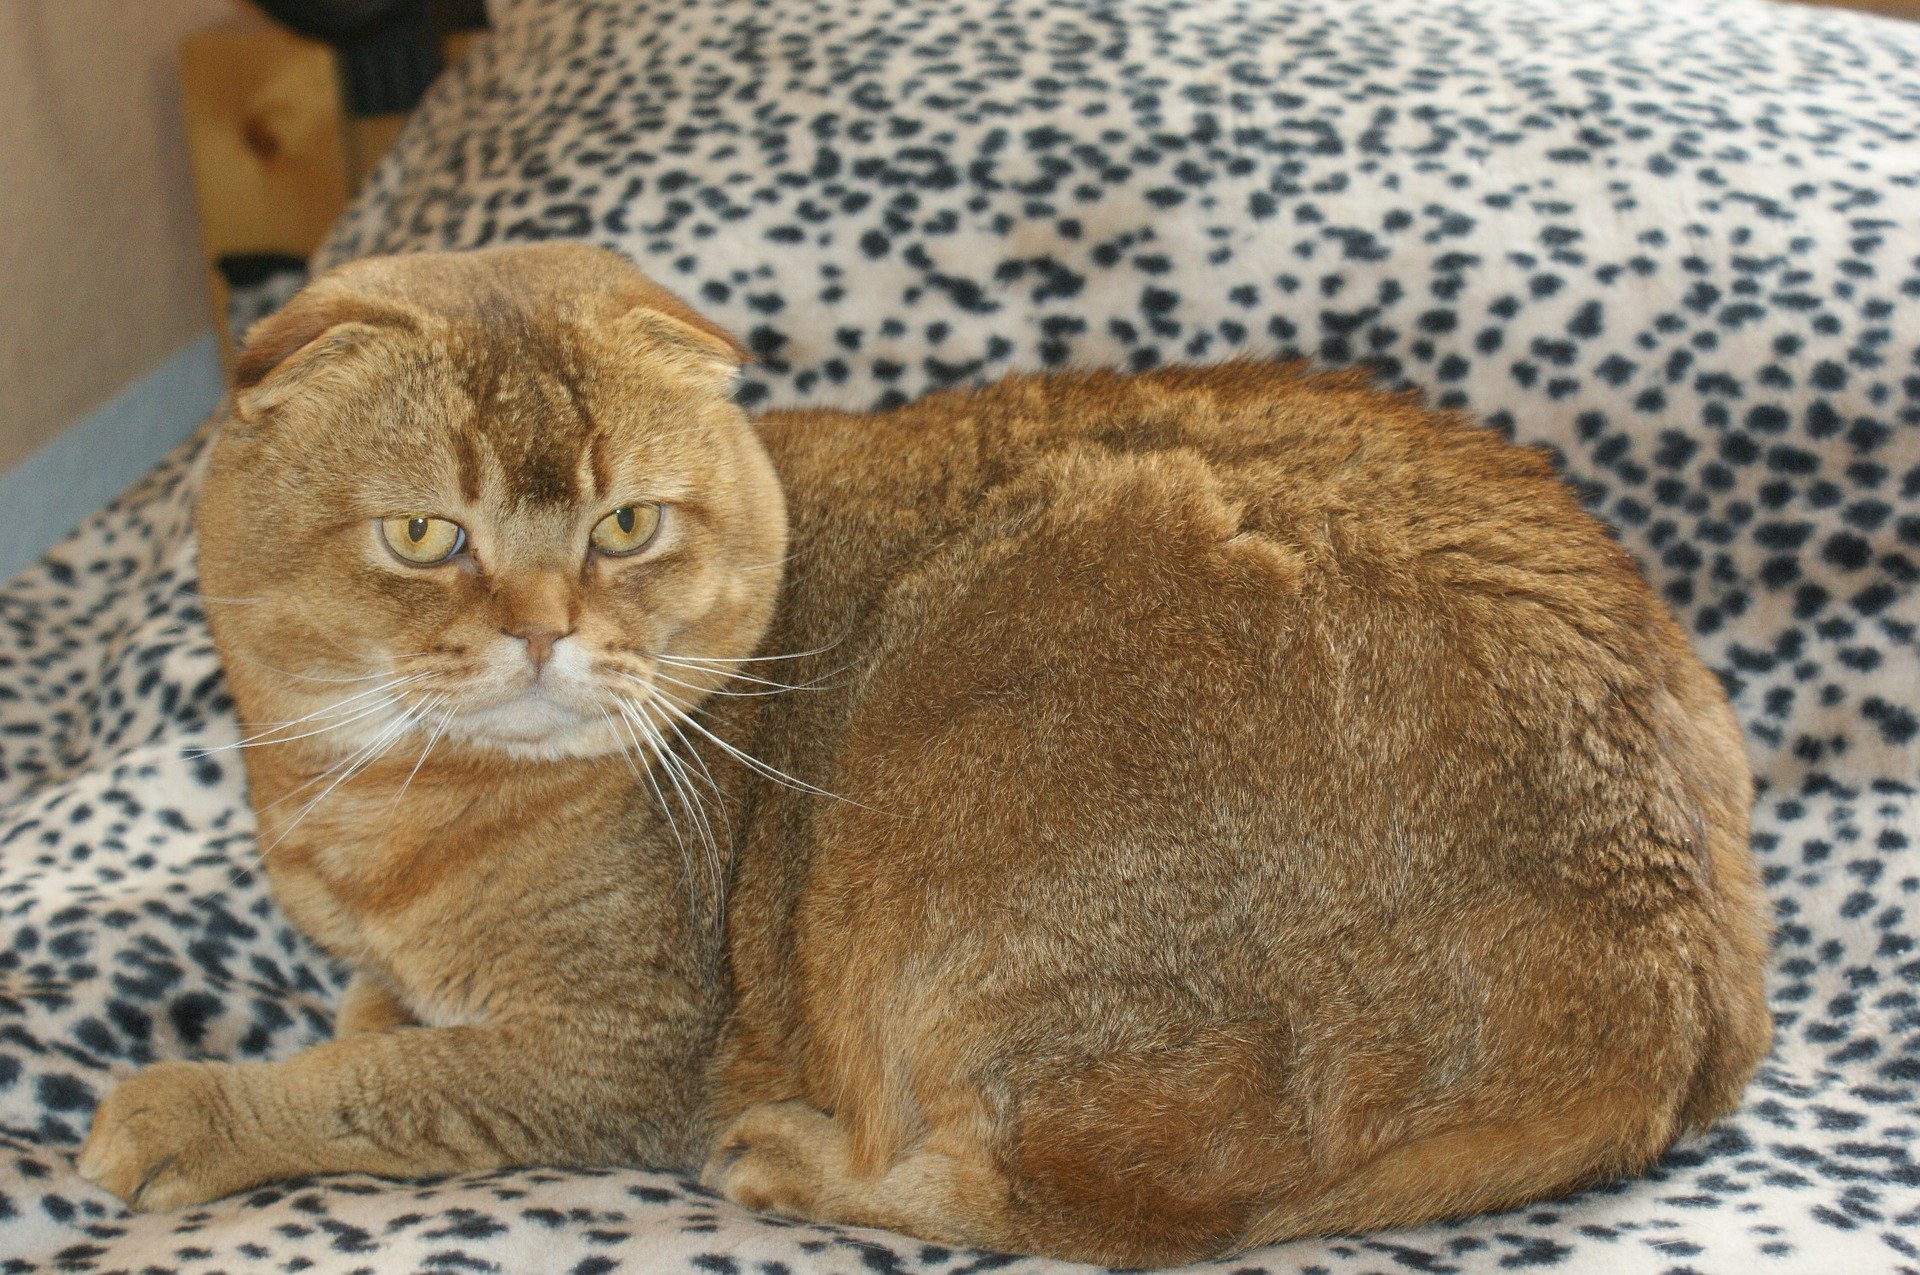 Die Scottish Fold Katze ist mittelgroß und hat ungewöhnliche Ohren. Sie sind klein, gerundet und weit auseinander gesetzt.